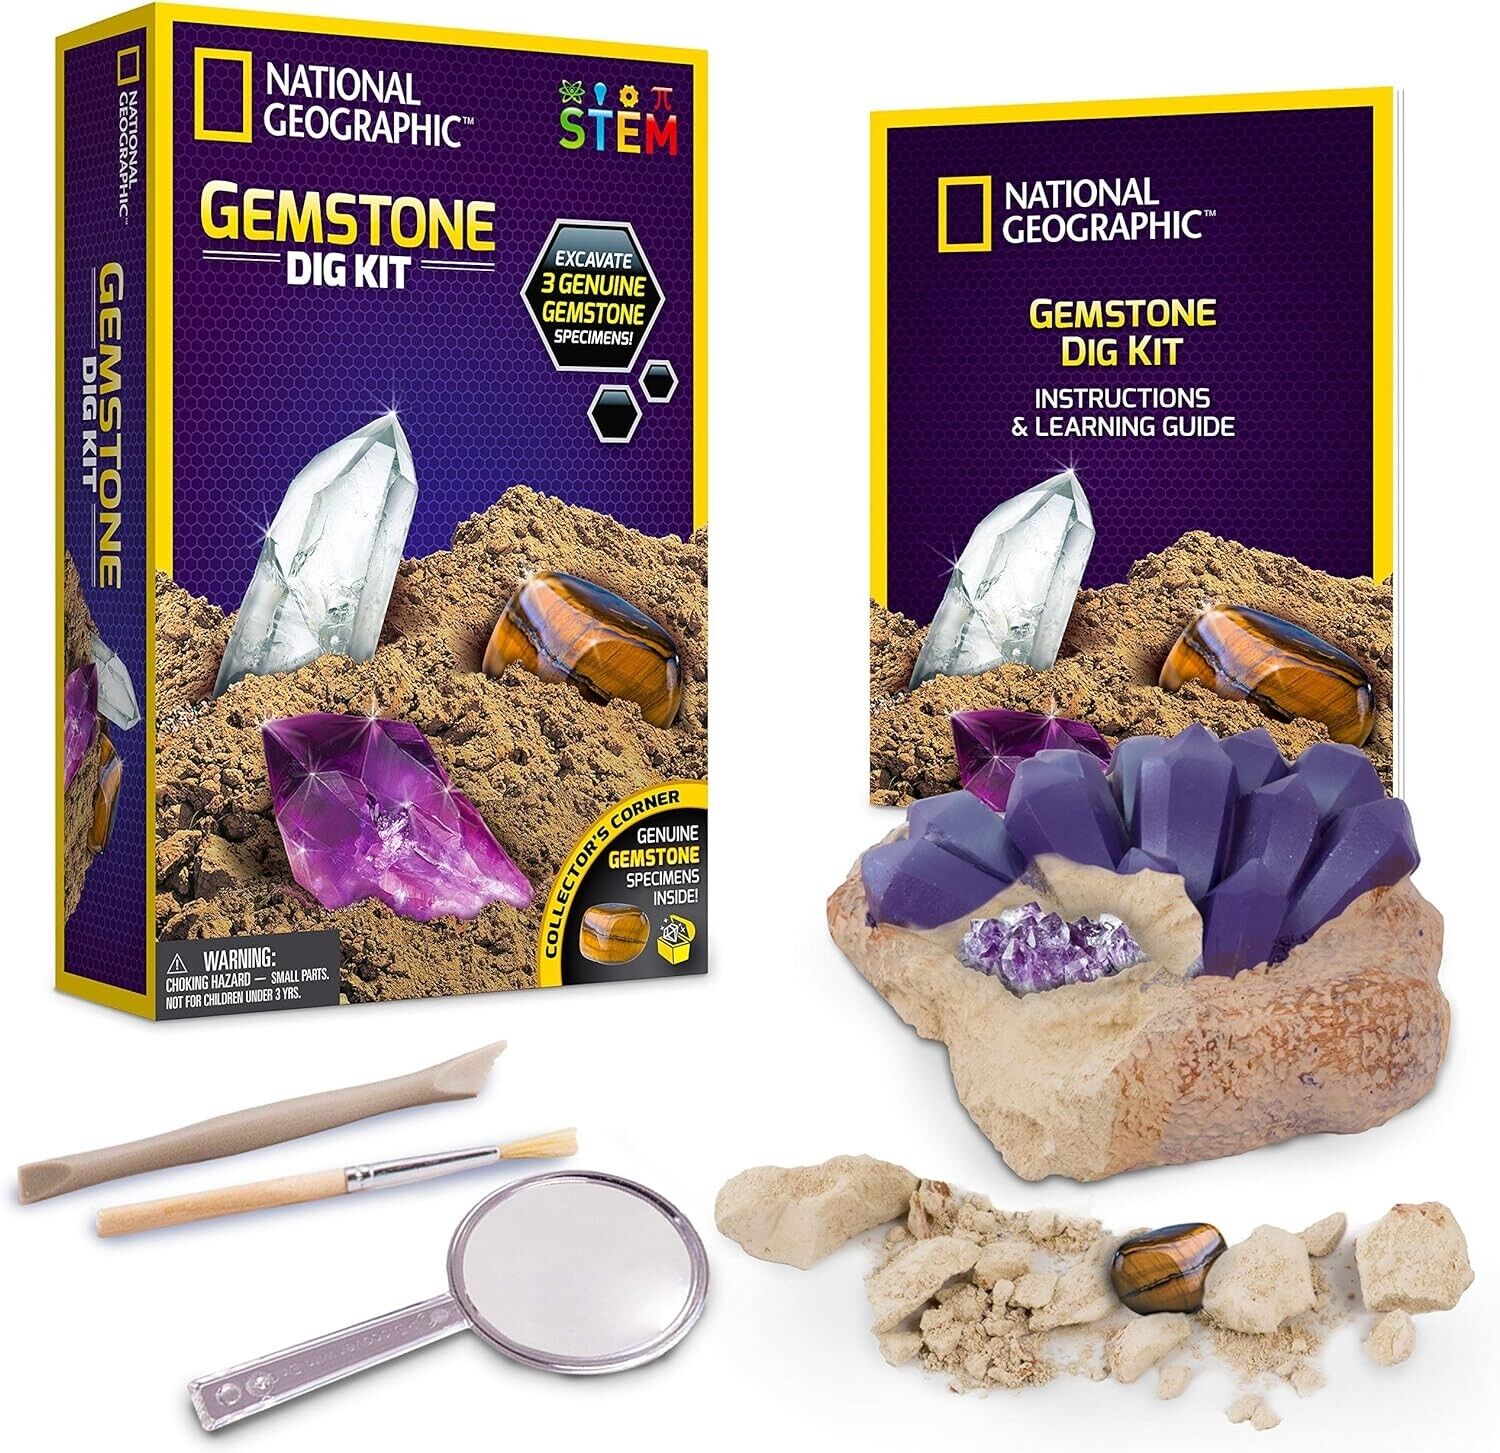 National Geographic Gemstone Dig Kit - Fascinating Gem Excavation Kits for Kids